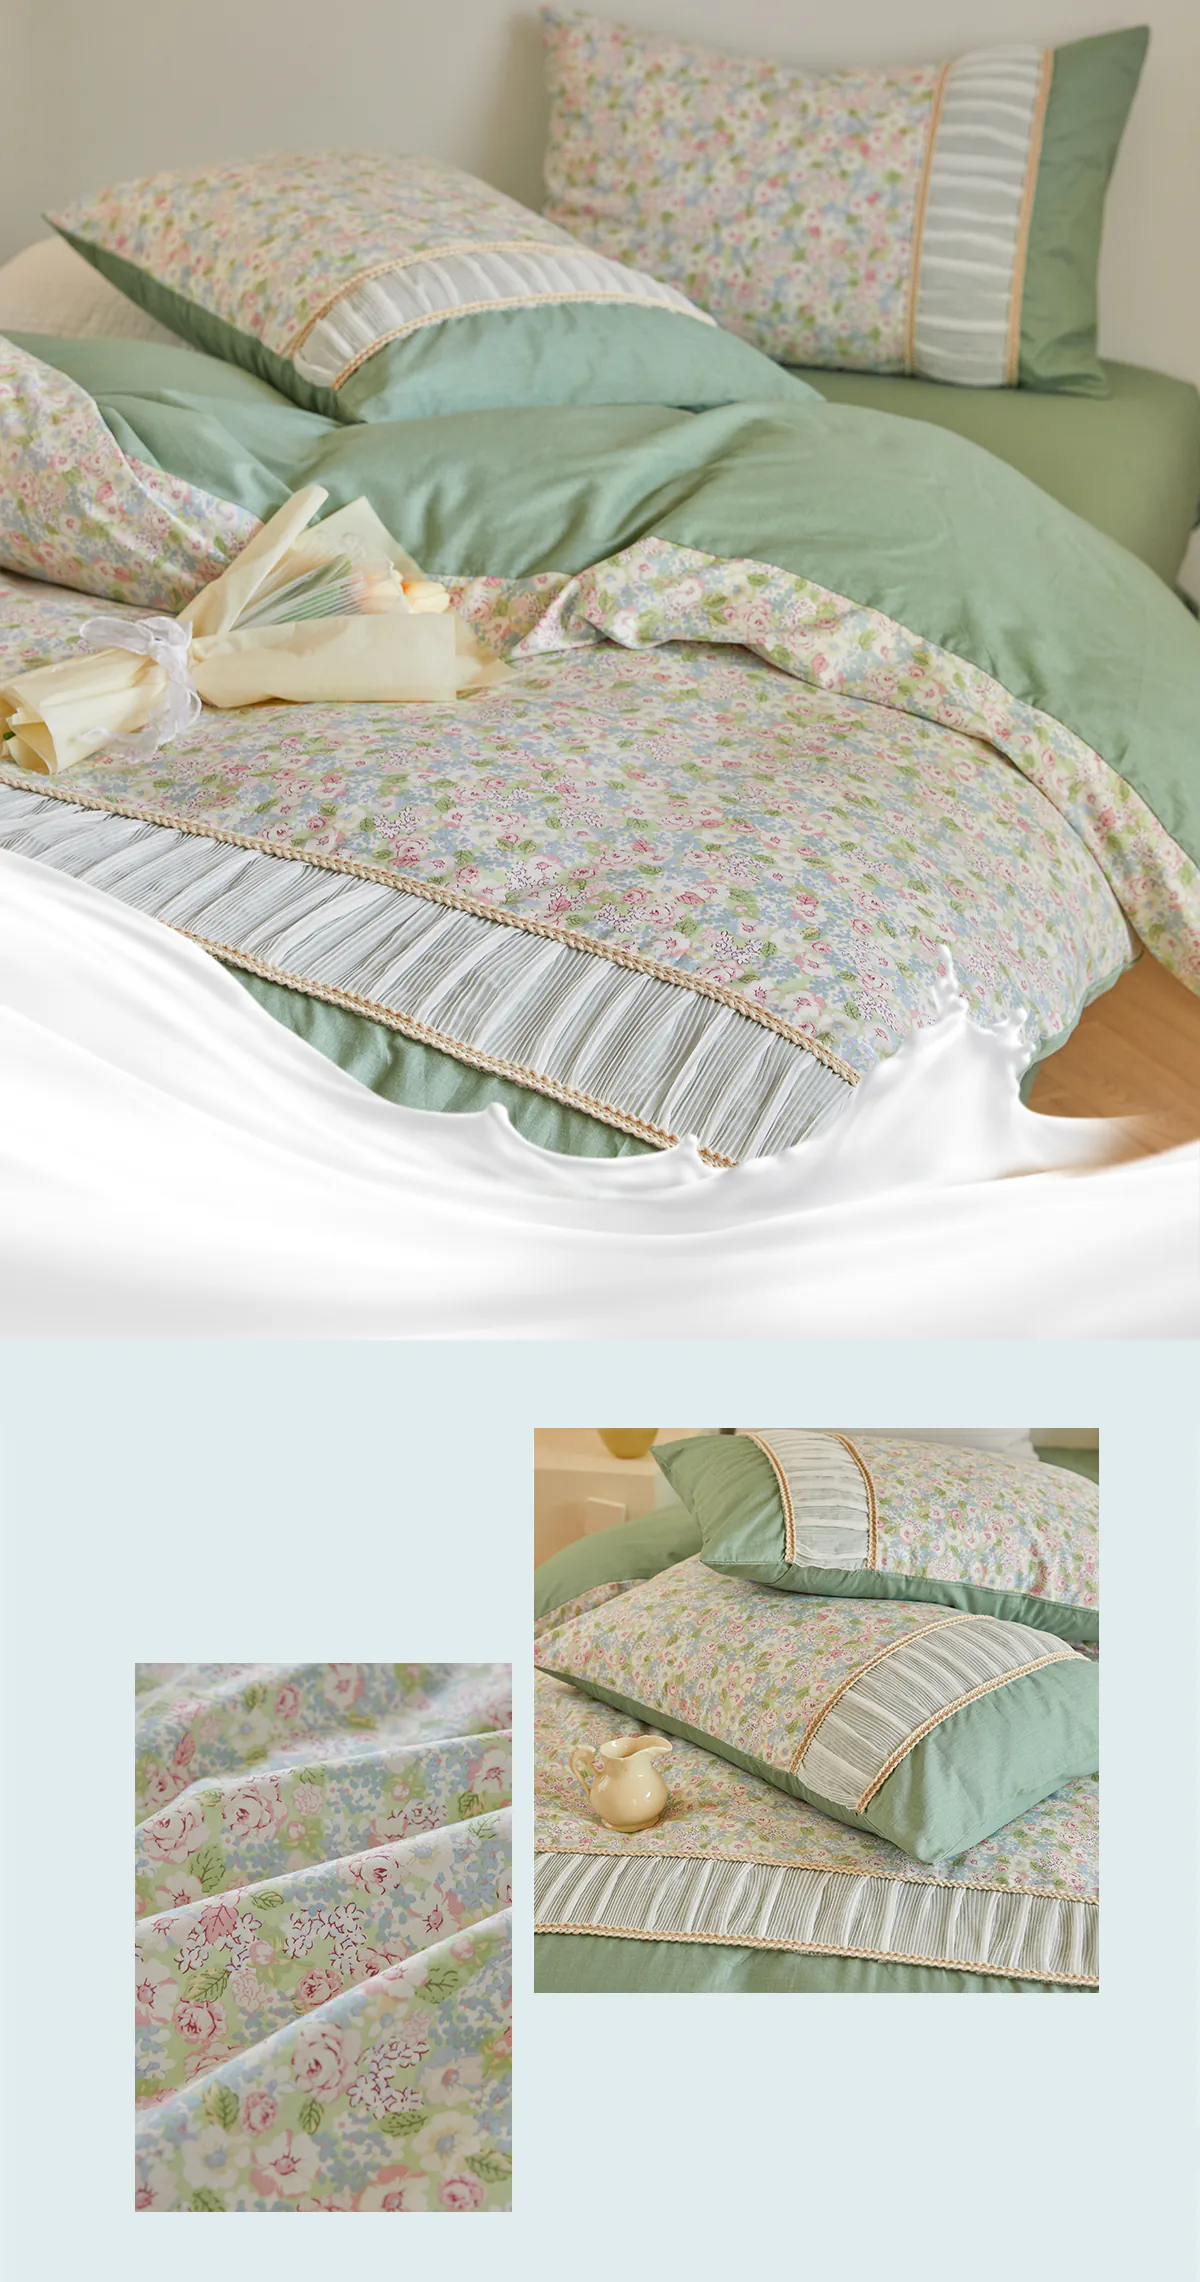 Retro-Princess-Style-100-Cotton-Floral-Duvet-Cover-Bedding-Set18